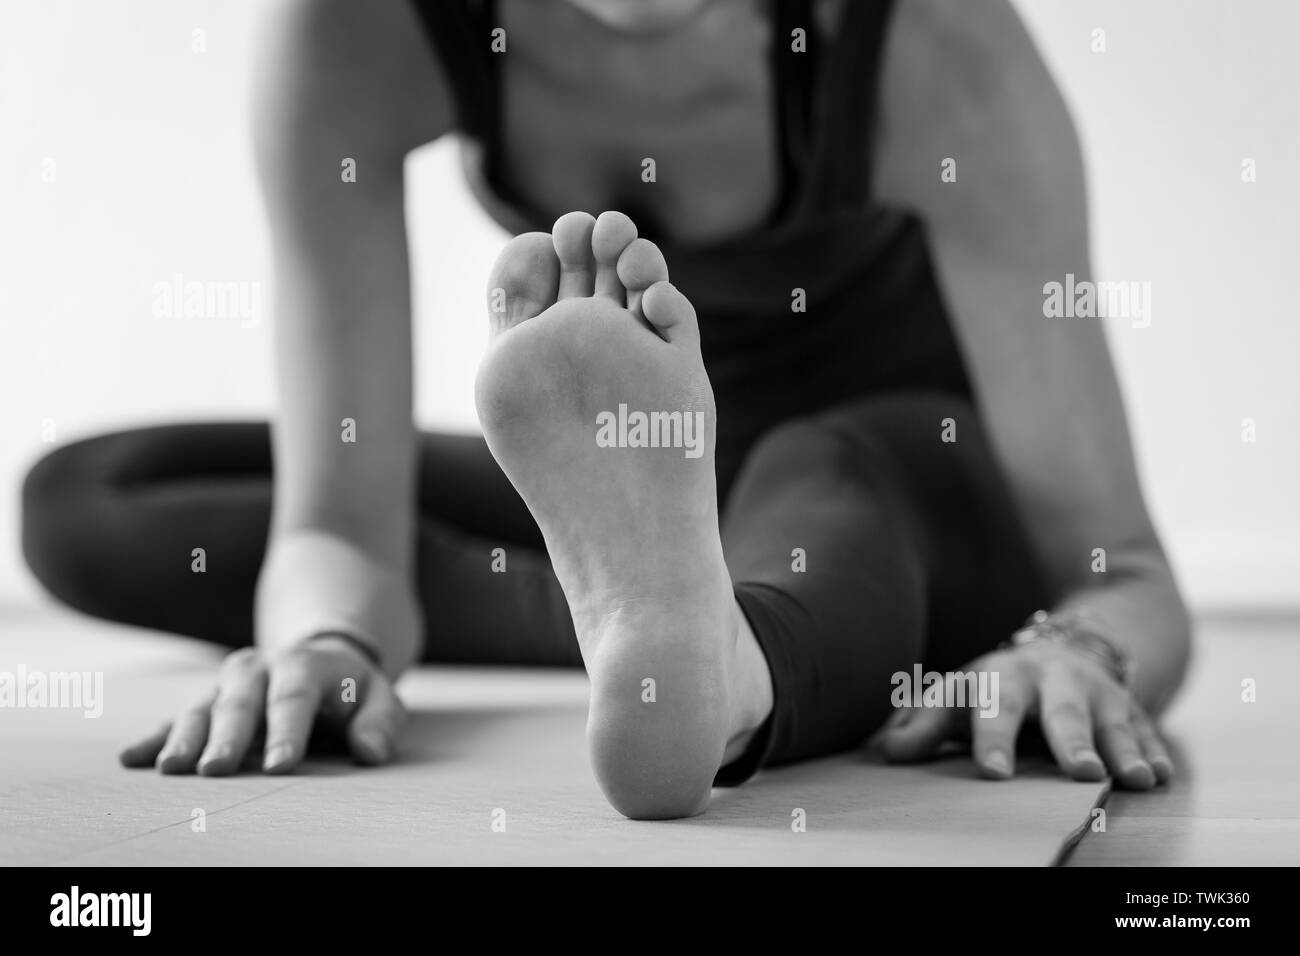 Nicht erkennbare europäische Frau auf dem Boden auf dem Weg zu Janu Sirsasana oder Head-to-Knee Forward Bend, auch als sitzende Yoga-Pose bekannt. Schwarz und Weiß horizontal Stockfoto